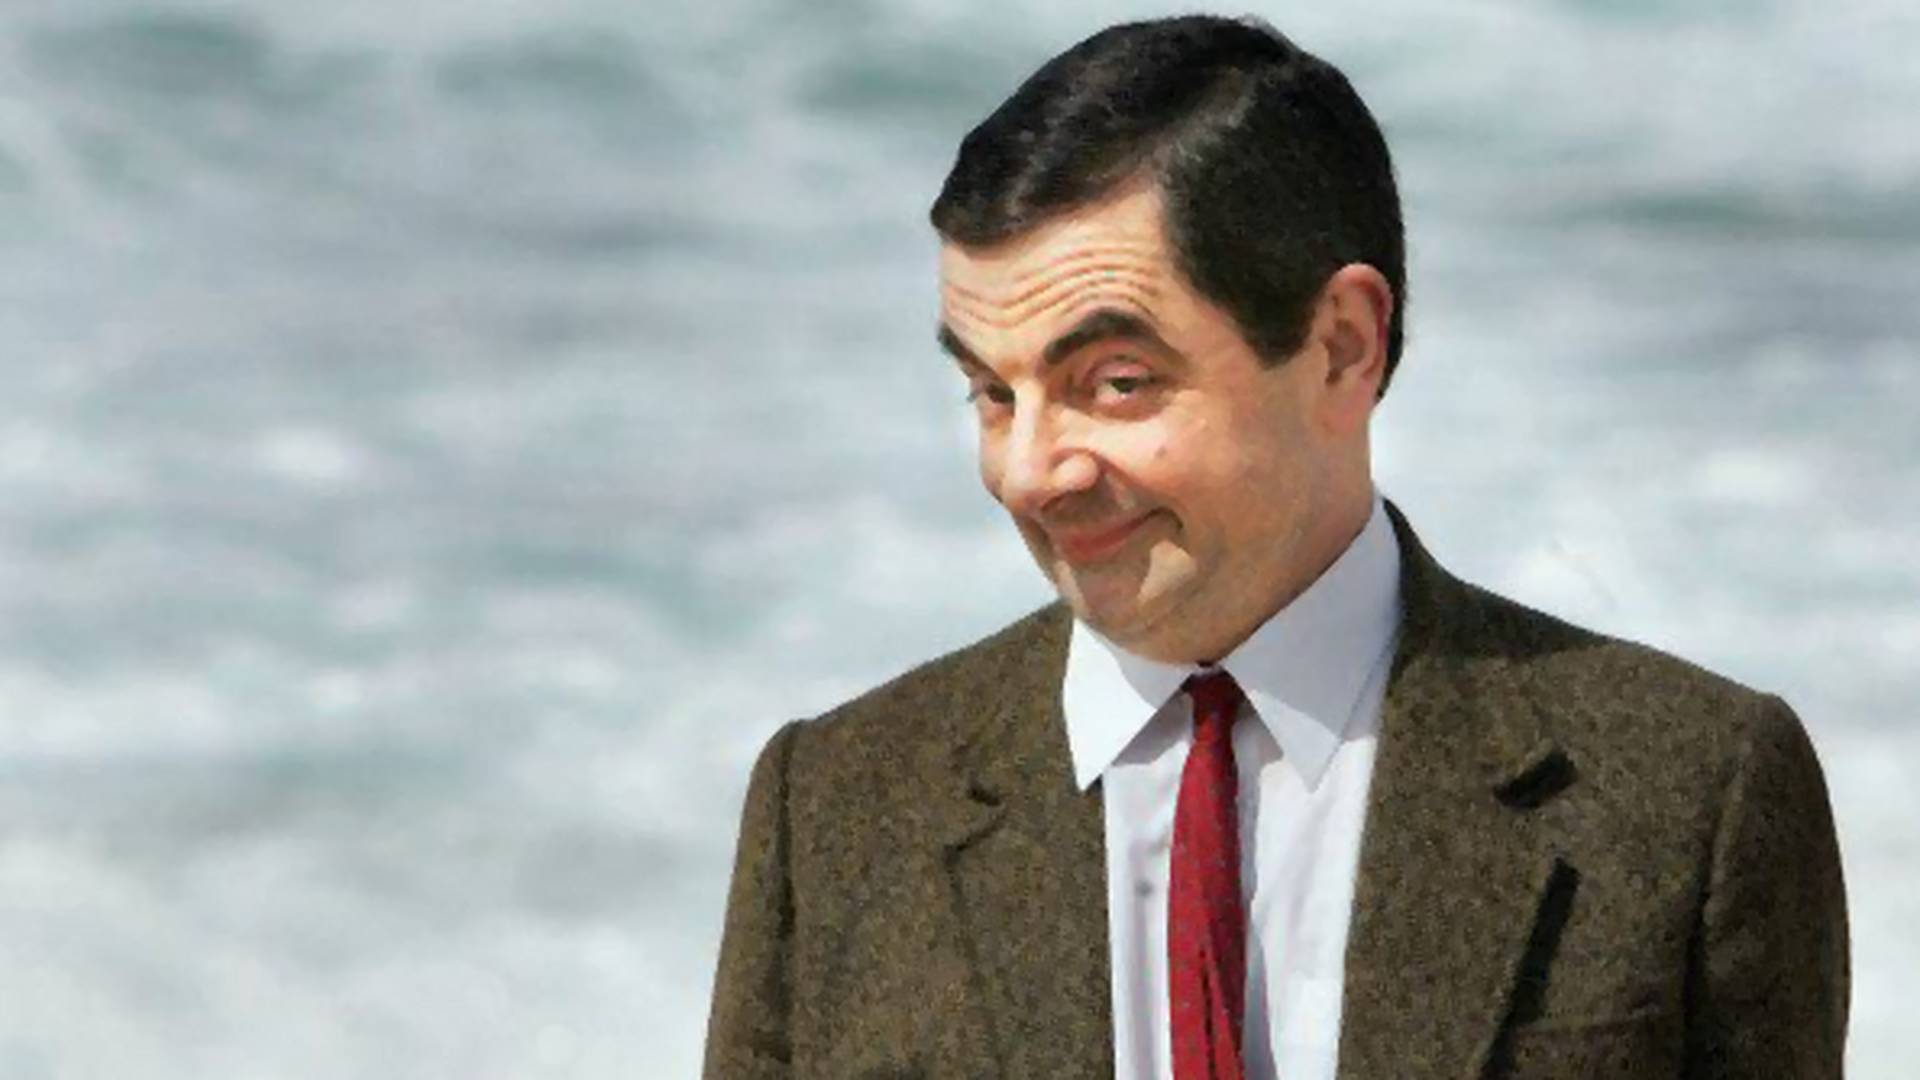 Rowan Atkinson nekiment a cancel culture-nek: „Minden viccnek van áldozata”